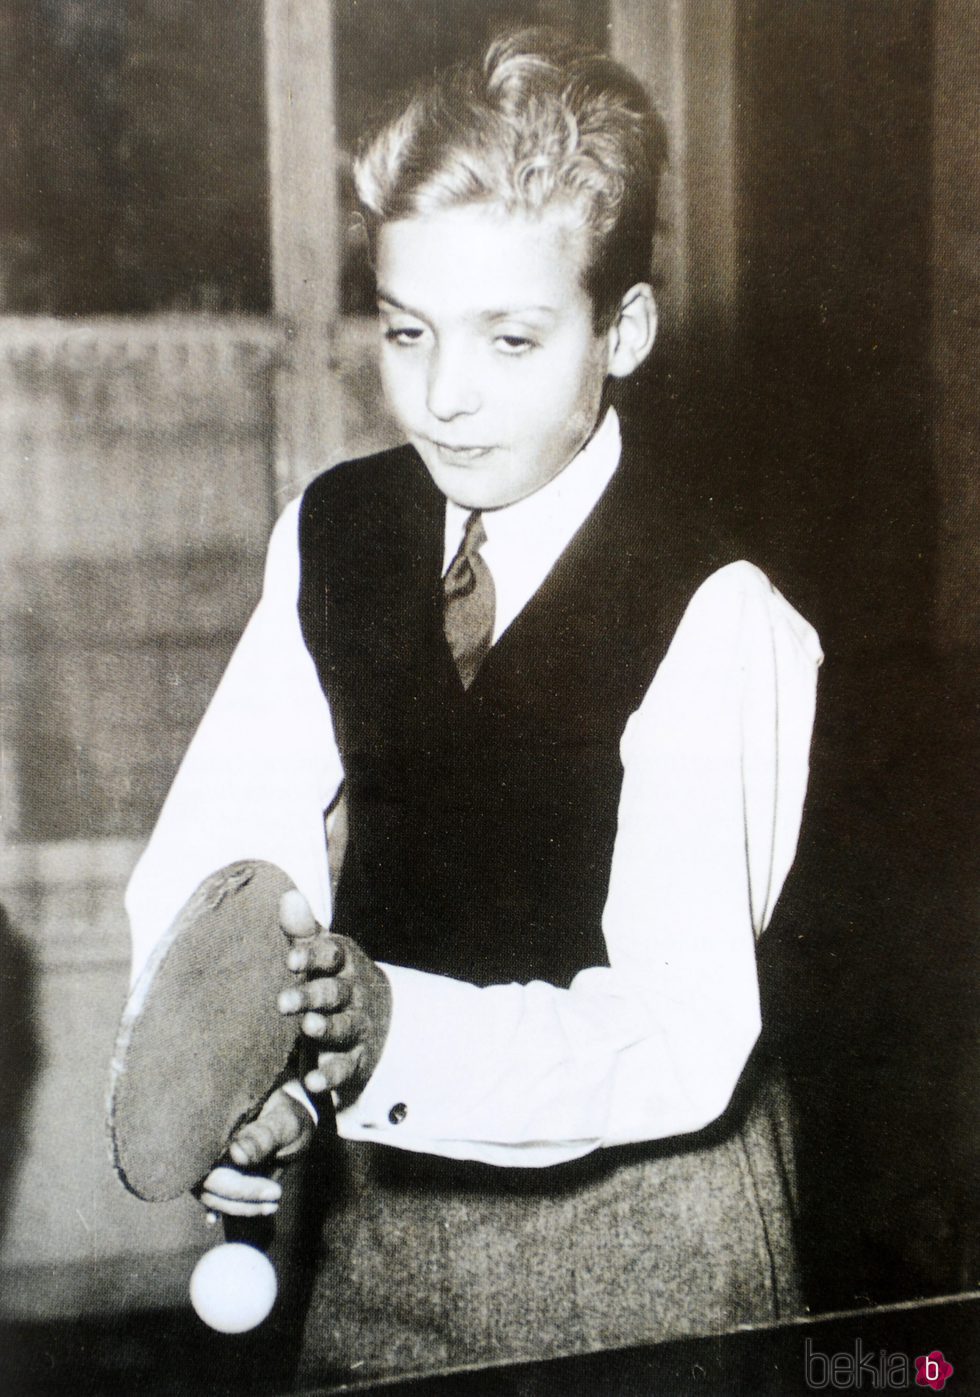 El Rey Juan Carlos de niño jugando al ping-pong